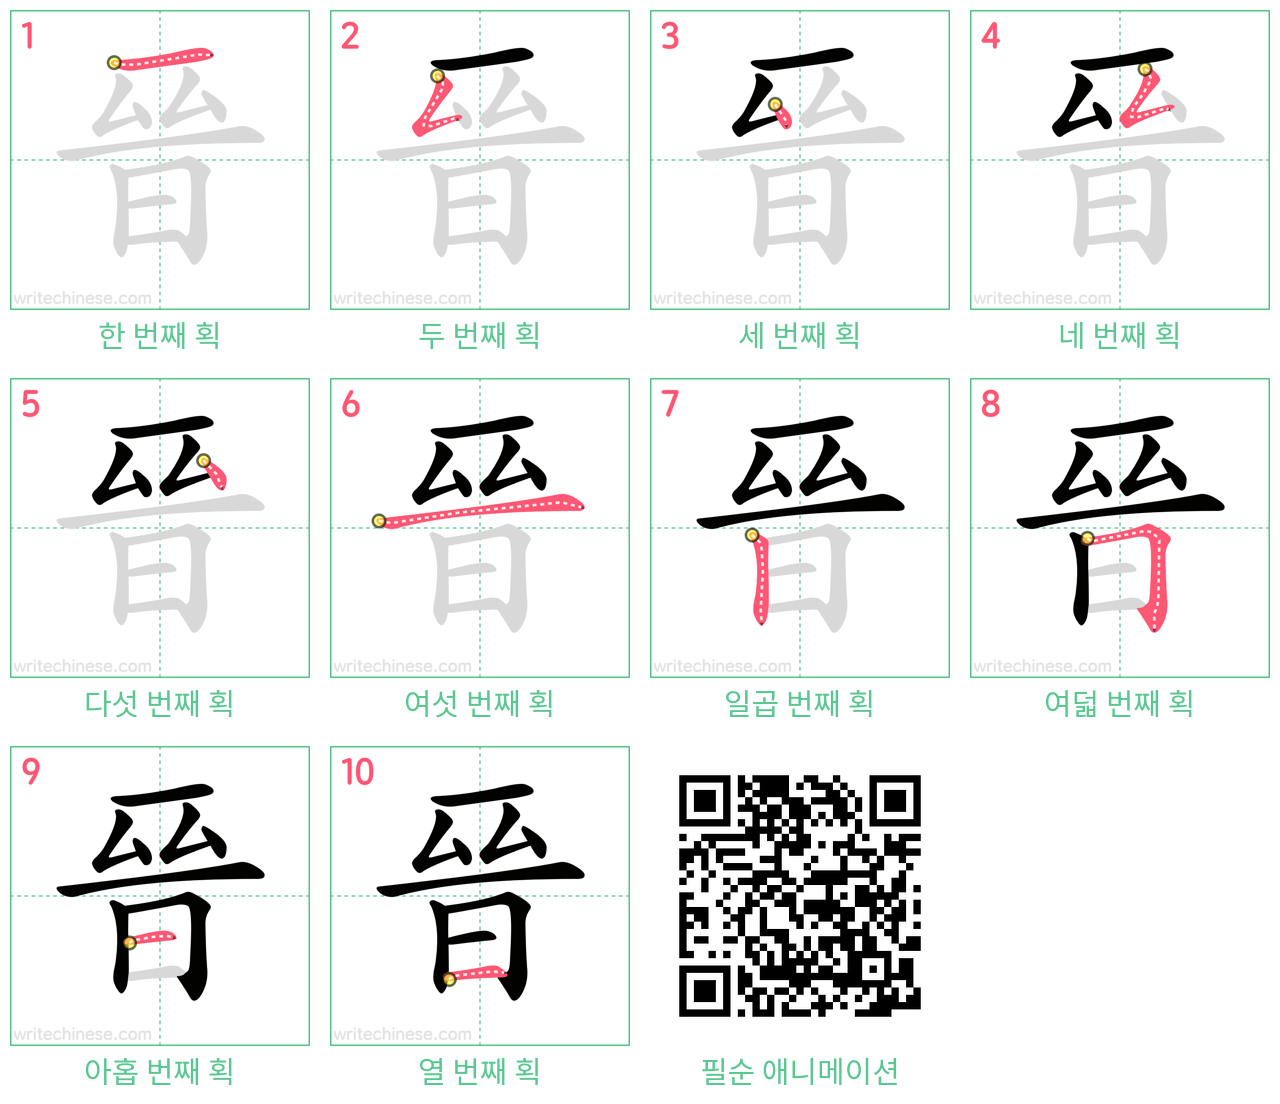 晉 step-by-step stroke order diagrams